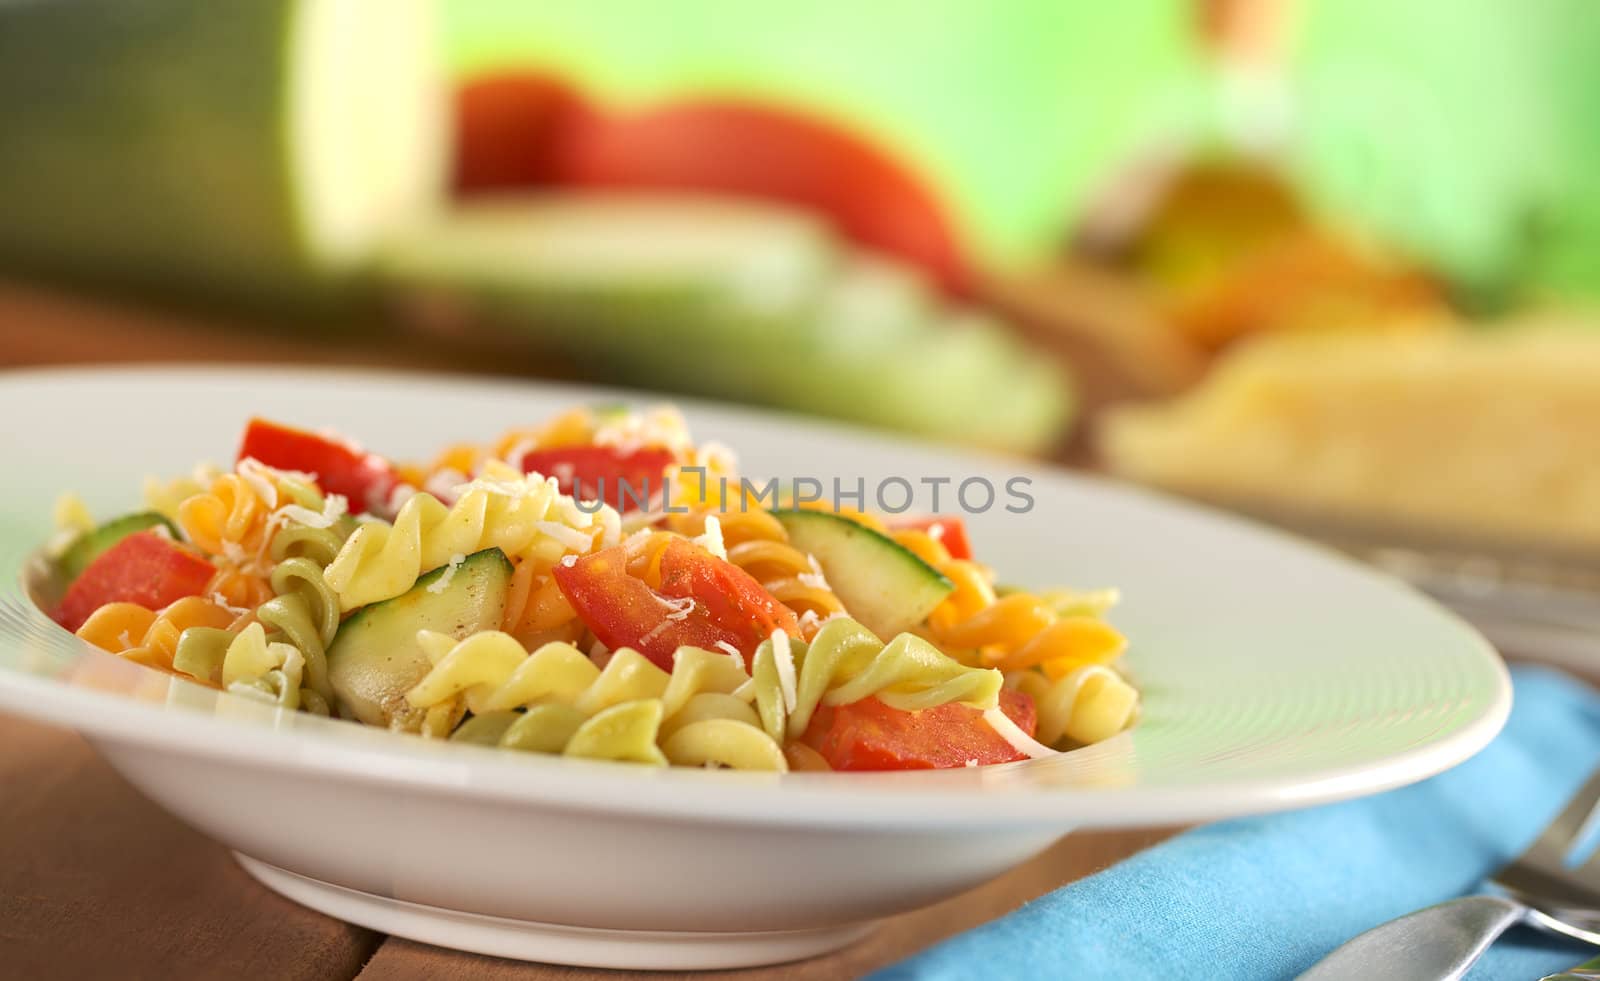 Fusilli with Tomato, Zucchini and Cheese by ildi